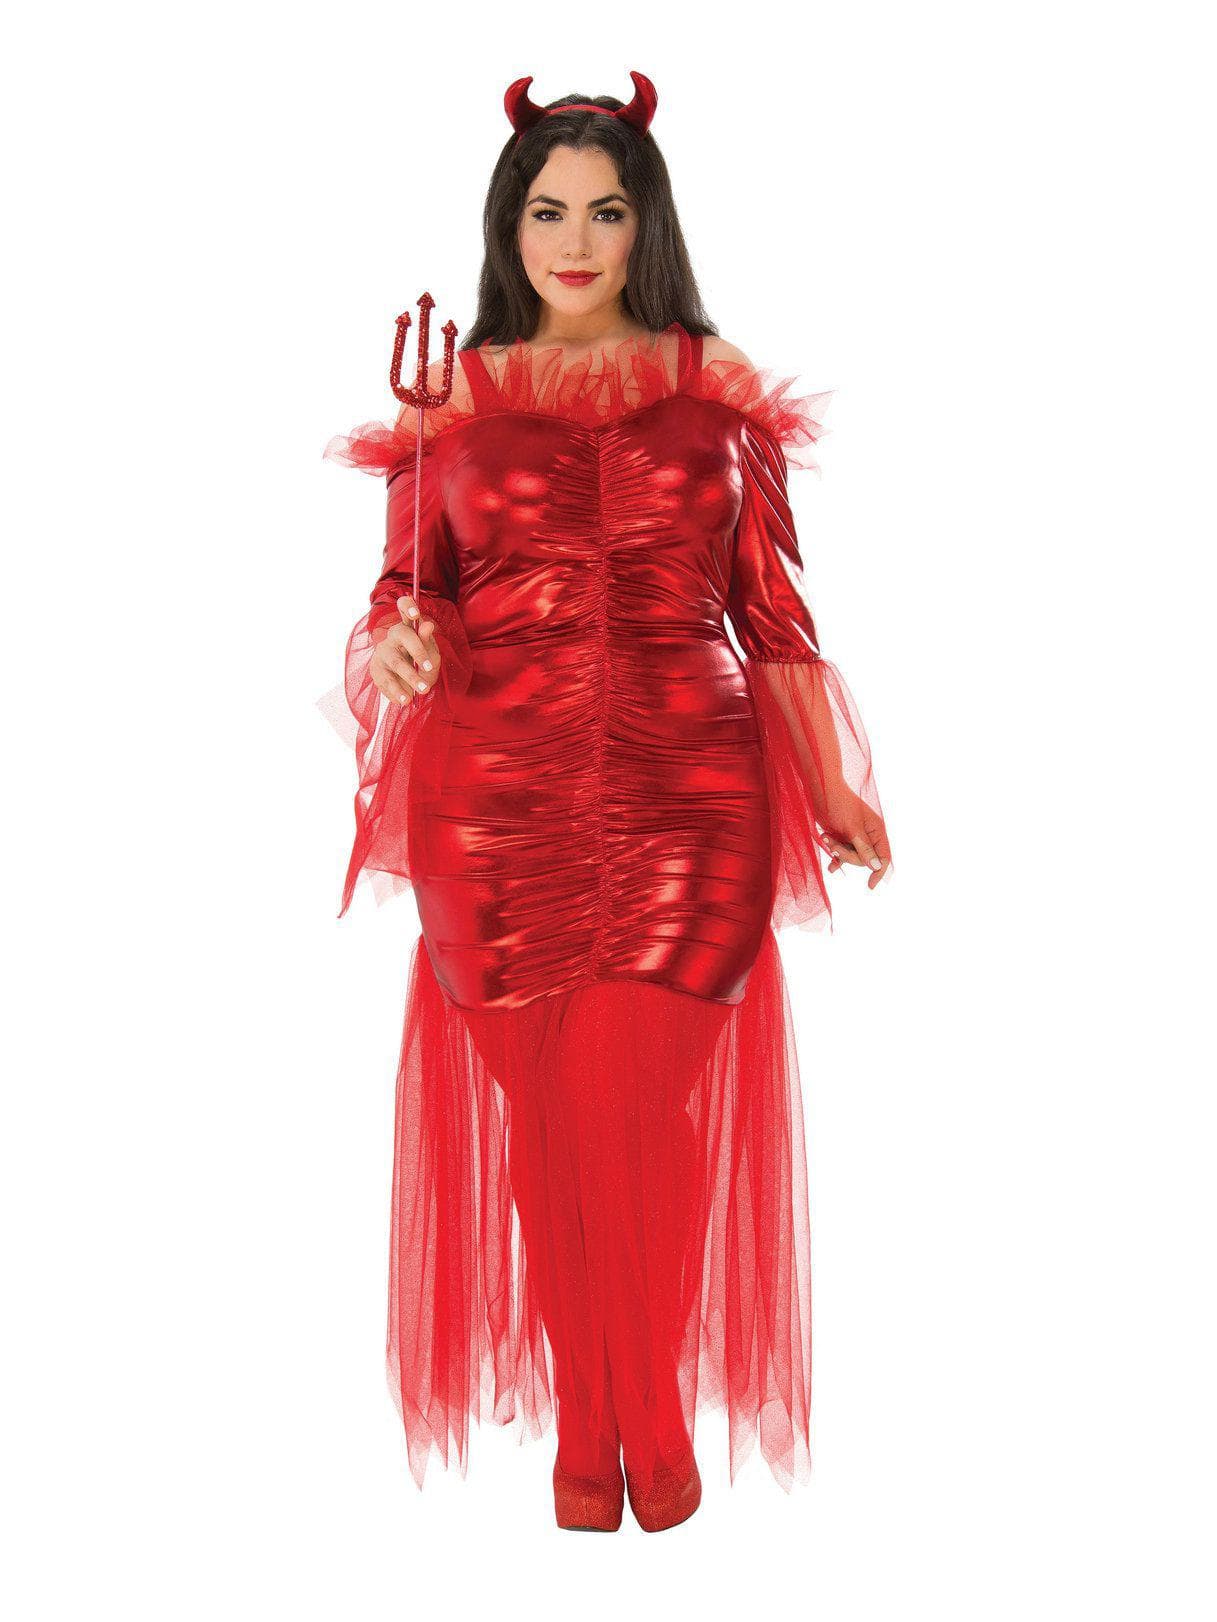 Adult Red Devil Plus Costume - costumes.com